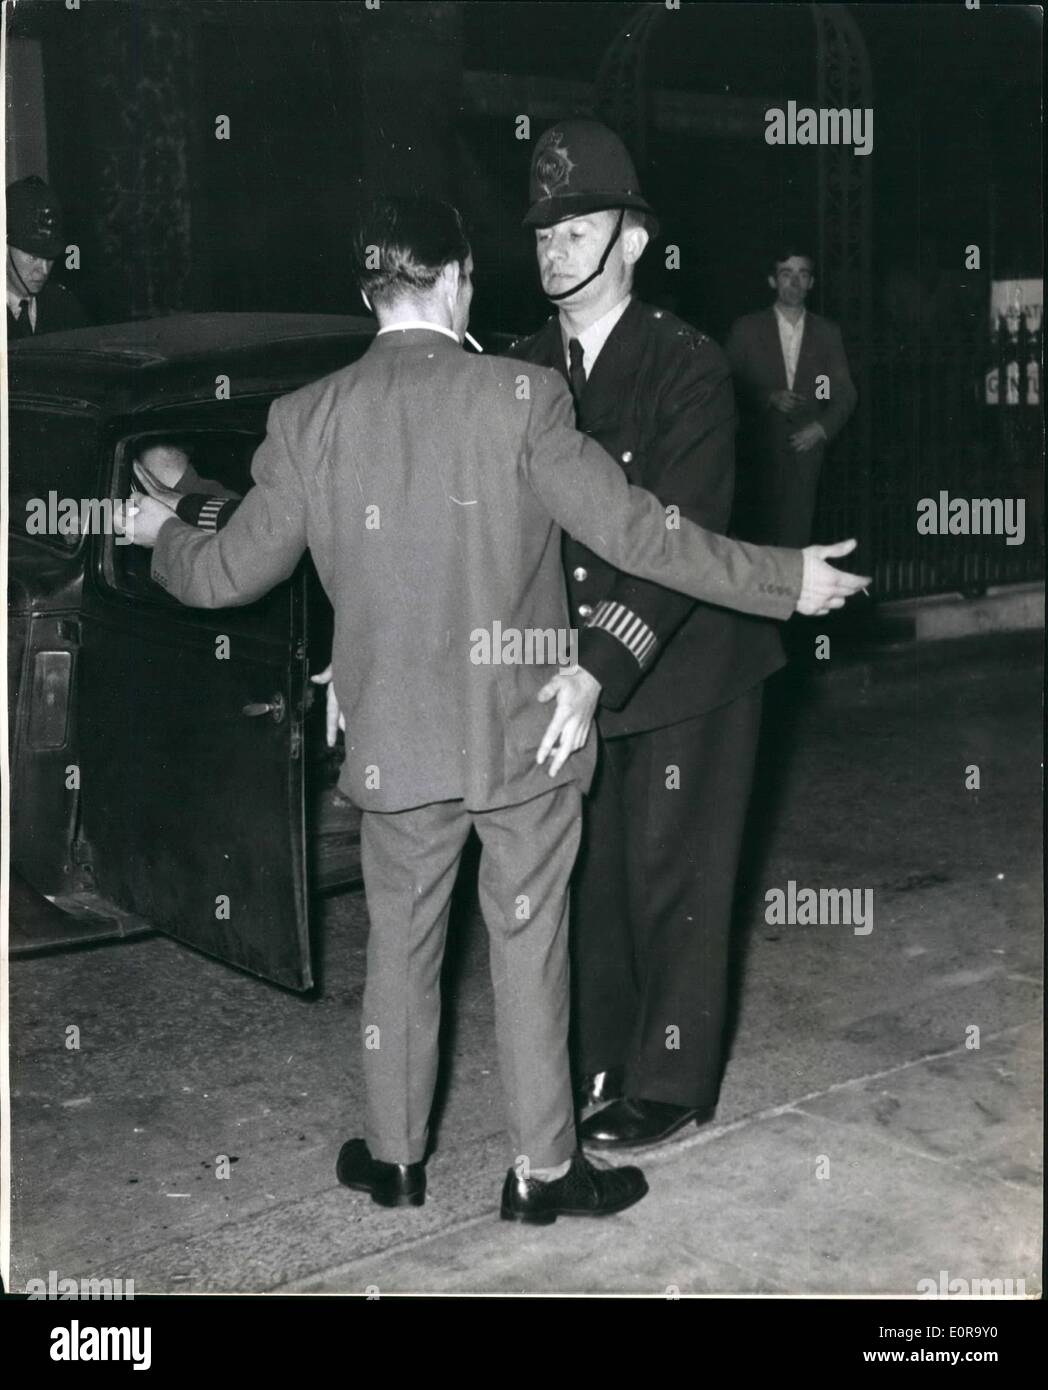 Sept. 09, 1958 - schwarz-weiß-Unruhen In Notting Hill Gate noch einmal... Polizist '' Frisks'' A White man wurden viele Verhaftungen vorgenommen, wenn schwarze und weiße Menschen wieder einmal - im Bereich der London Notting Hill kollidierte. Dies war die vierte Nacht in Folge von solchen Ausschreitungen im Bereich... Keystone-Fotoshows: - ein Polizist "frisks" ein Whiteman - wie die Unruhen aufgebrochen waren - in Blenheim Crescent, Notting Hill Gate. Stockfoto